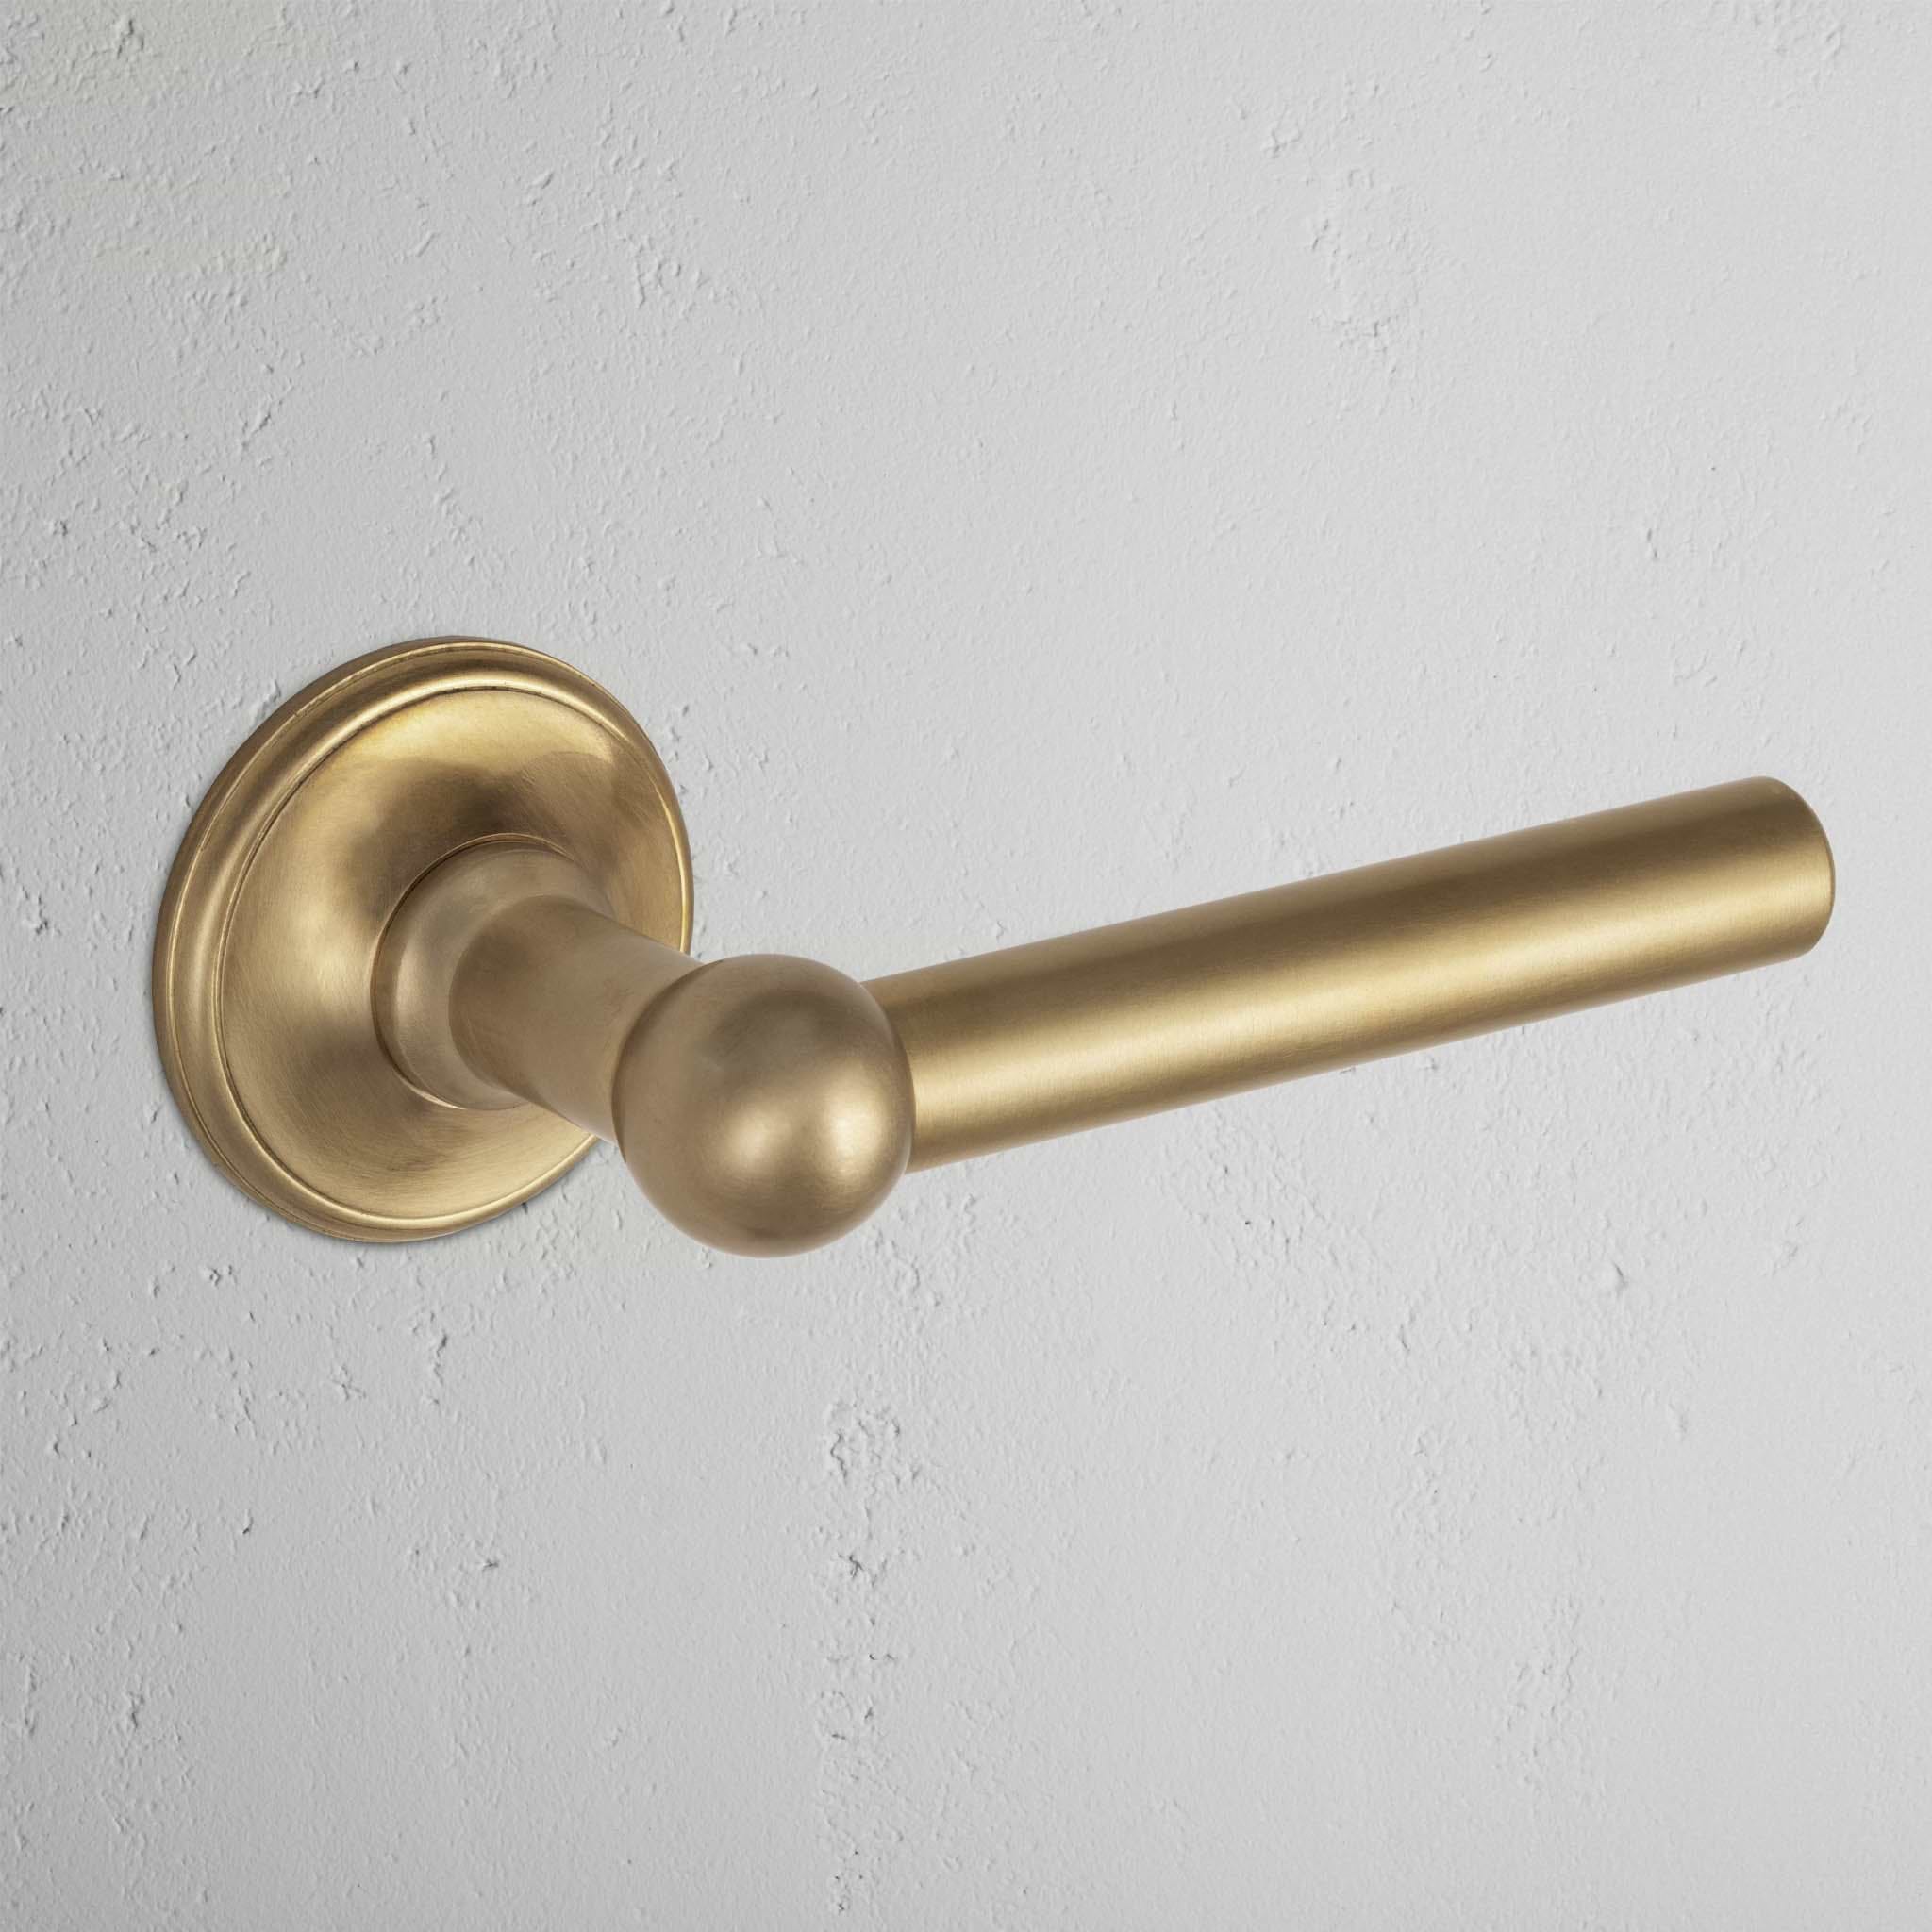 Antique Brass Harper Sprung Door Handle on White Background